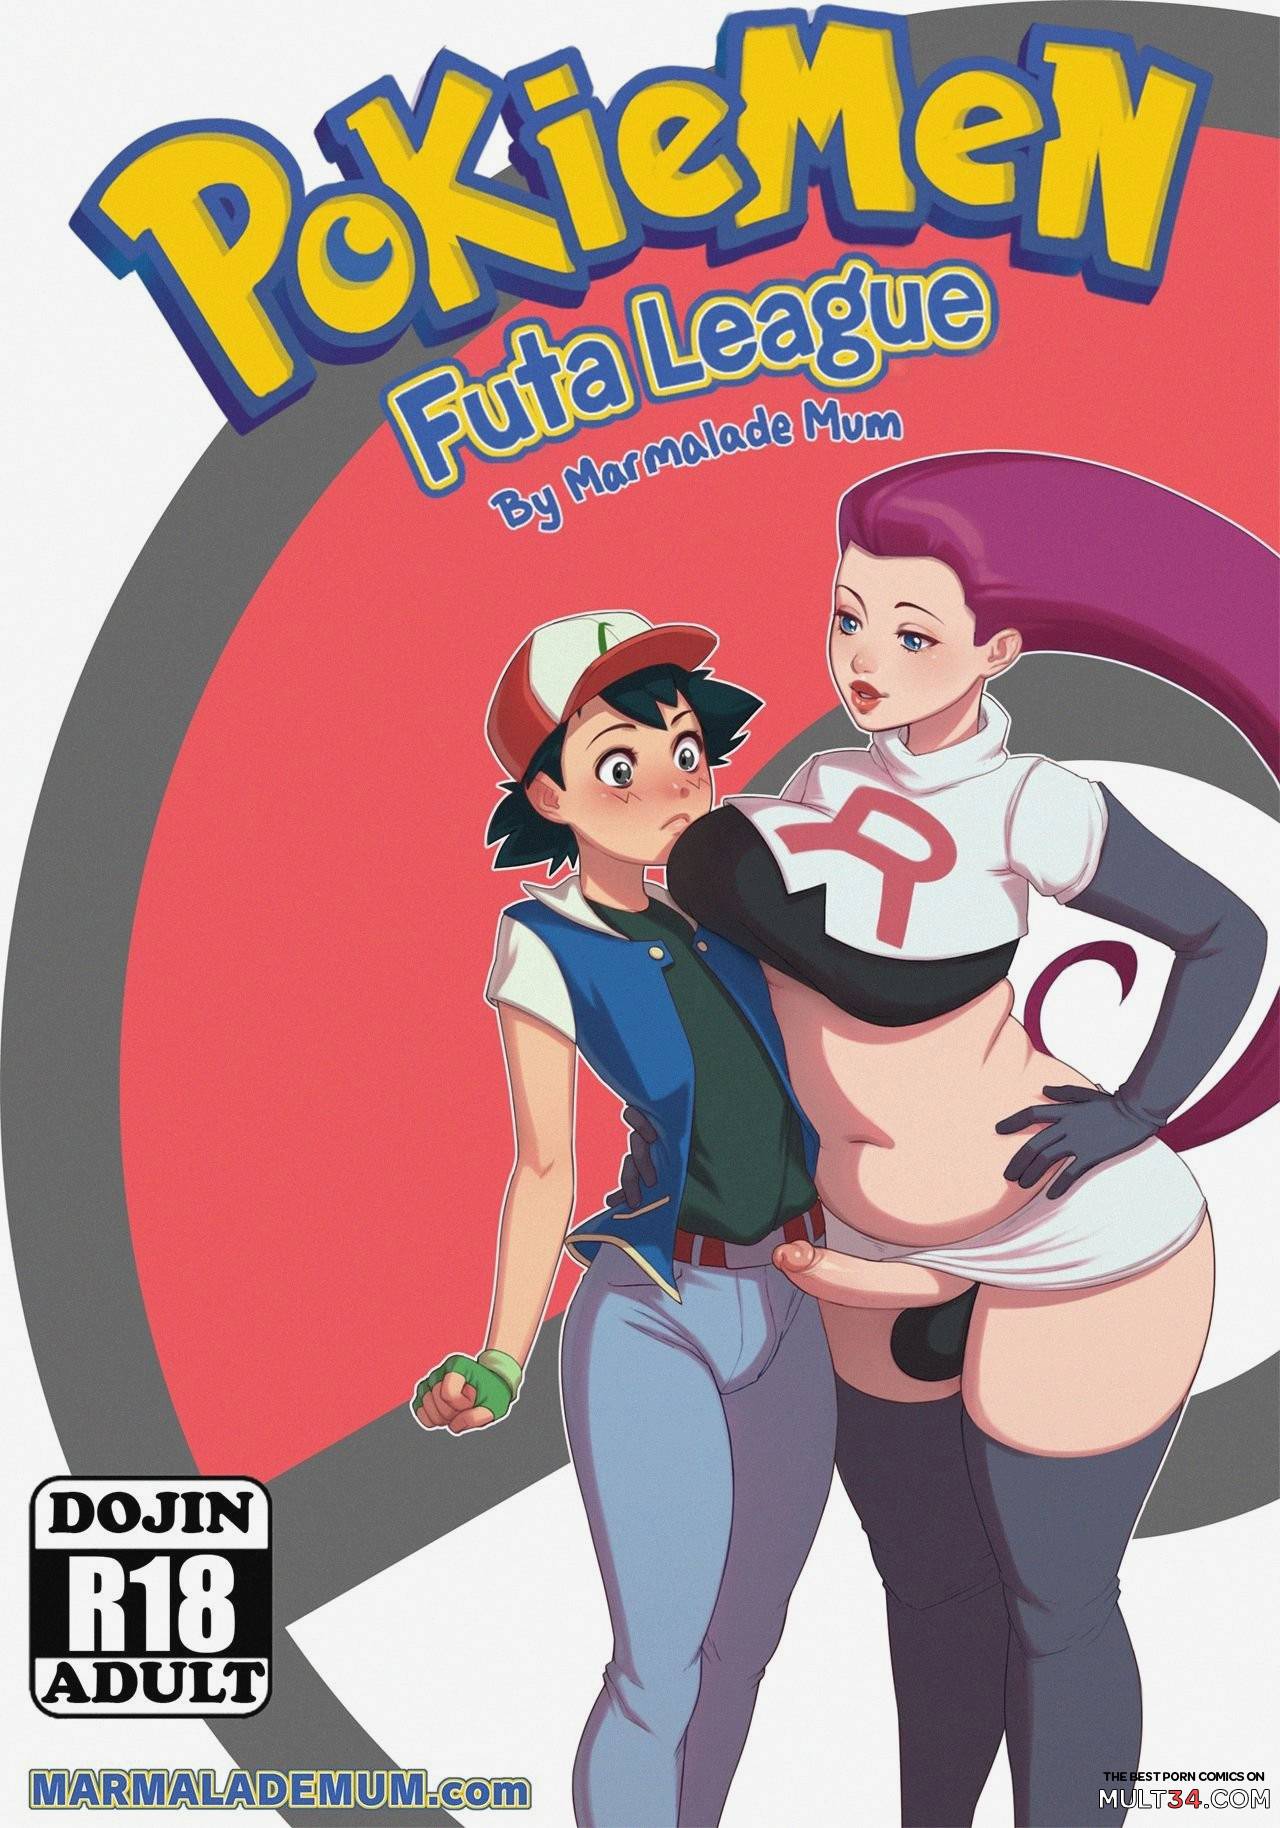 Pikachu Futanari Porn - Pokiemen - Futa League gay porn comic - the best cartoon porn comics, Rule  34 | MULT34